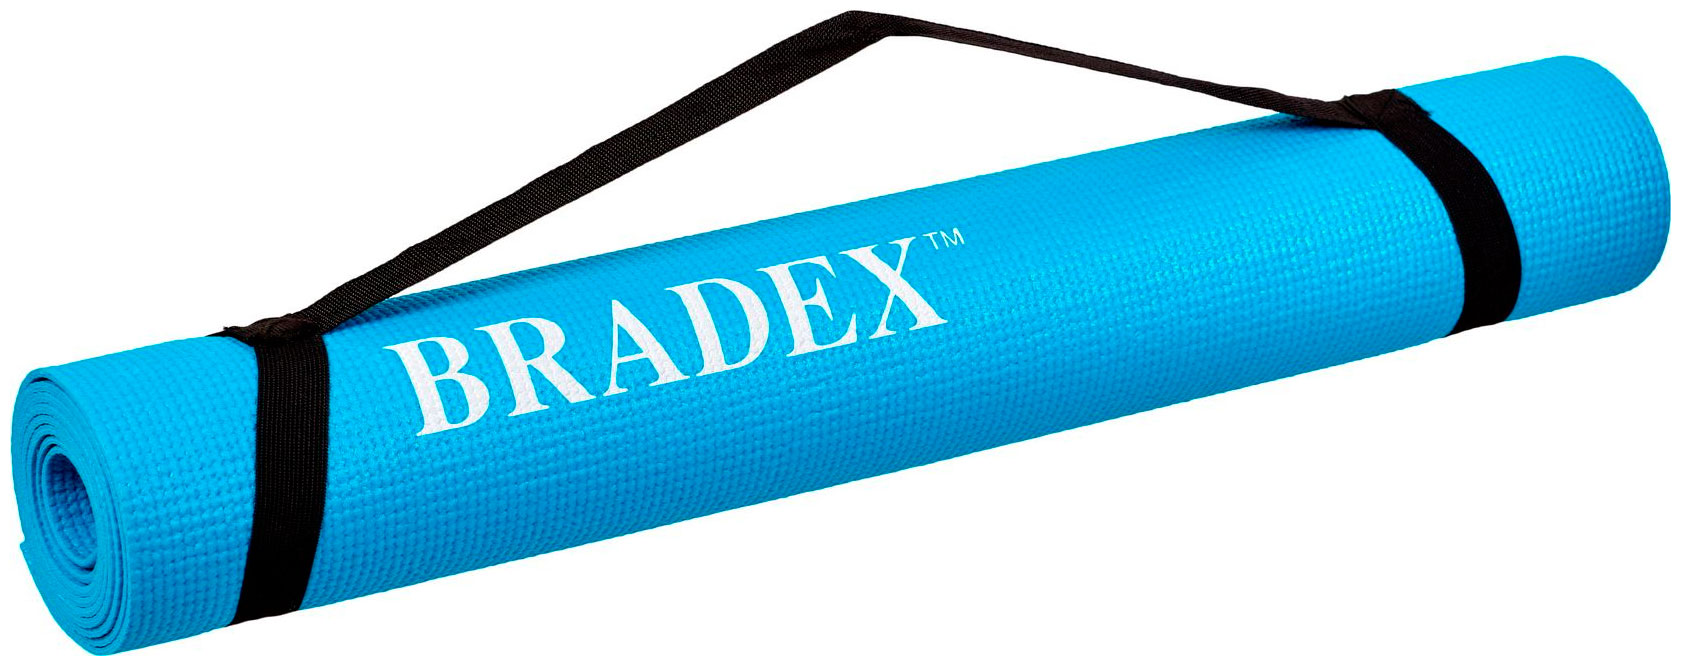 Коврик для йоги и фитнеса Bradex SF 0693 173*61*03 см бирюзовый с переноской коврик для йоги bradex sf 0682 183х61х0 4 см зелeный однотонный 0 4 см